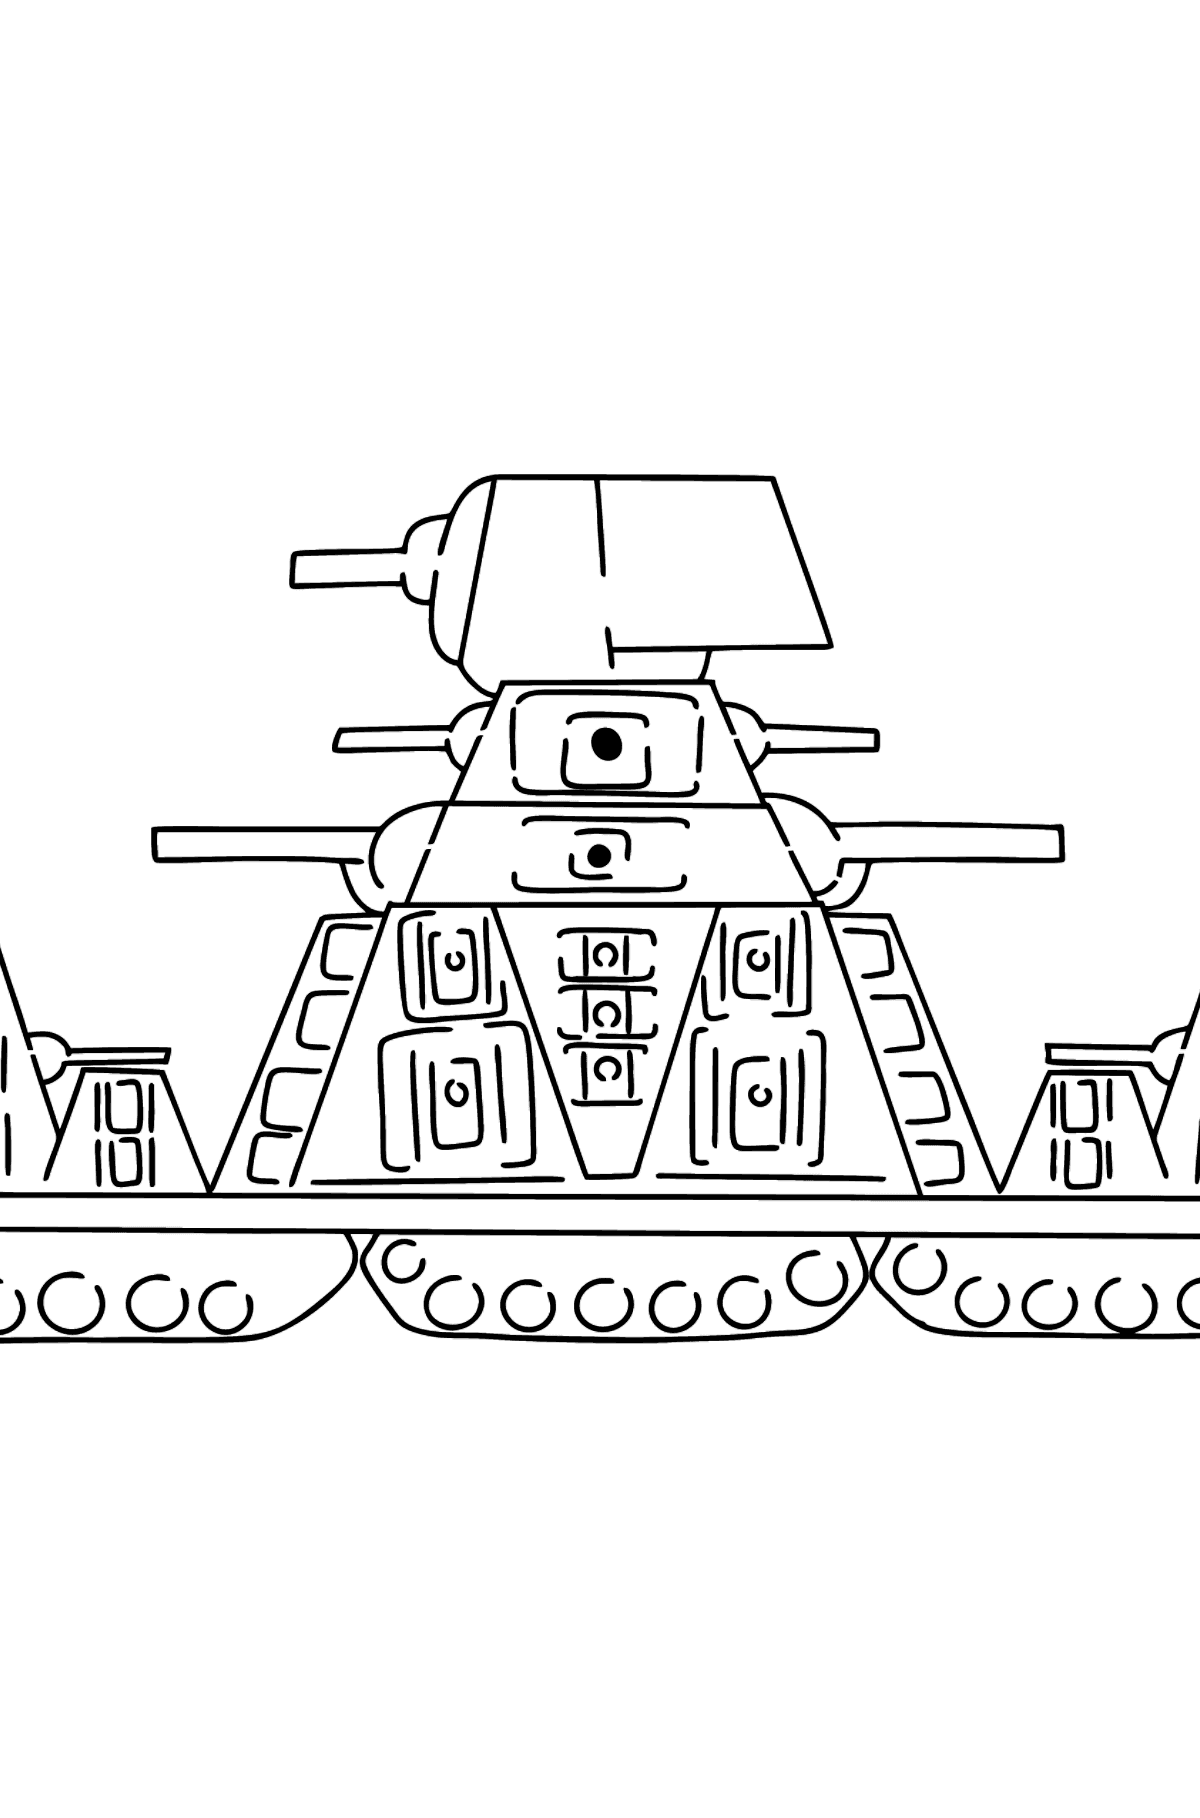 Tegning til farvning tank KV-44 - Tegninger til farvelægning for børn